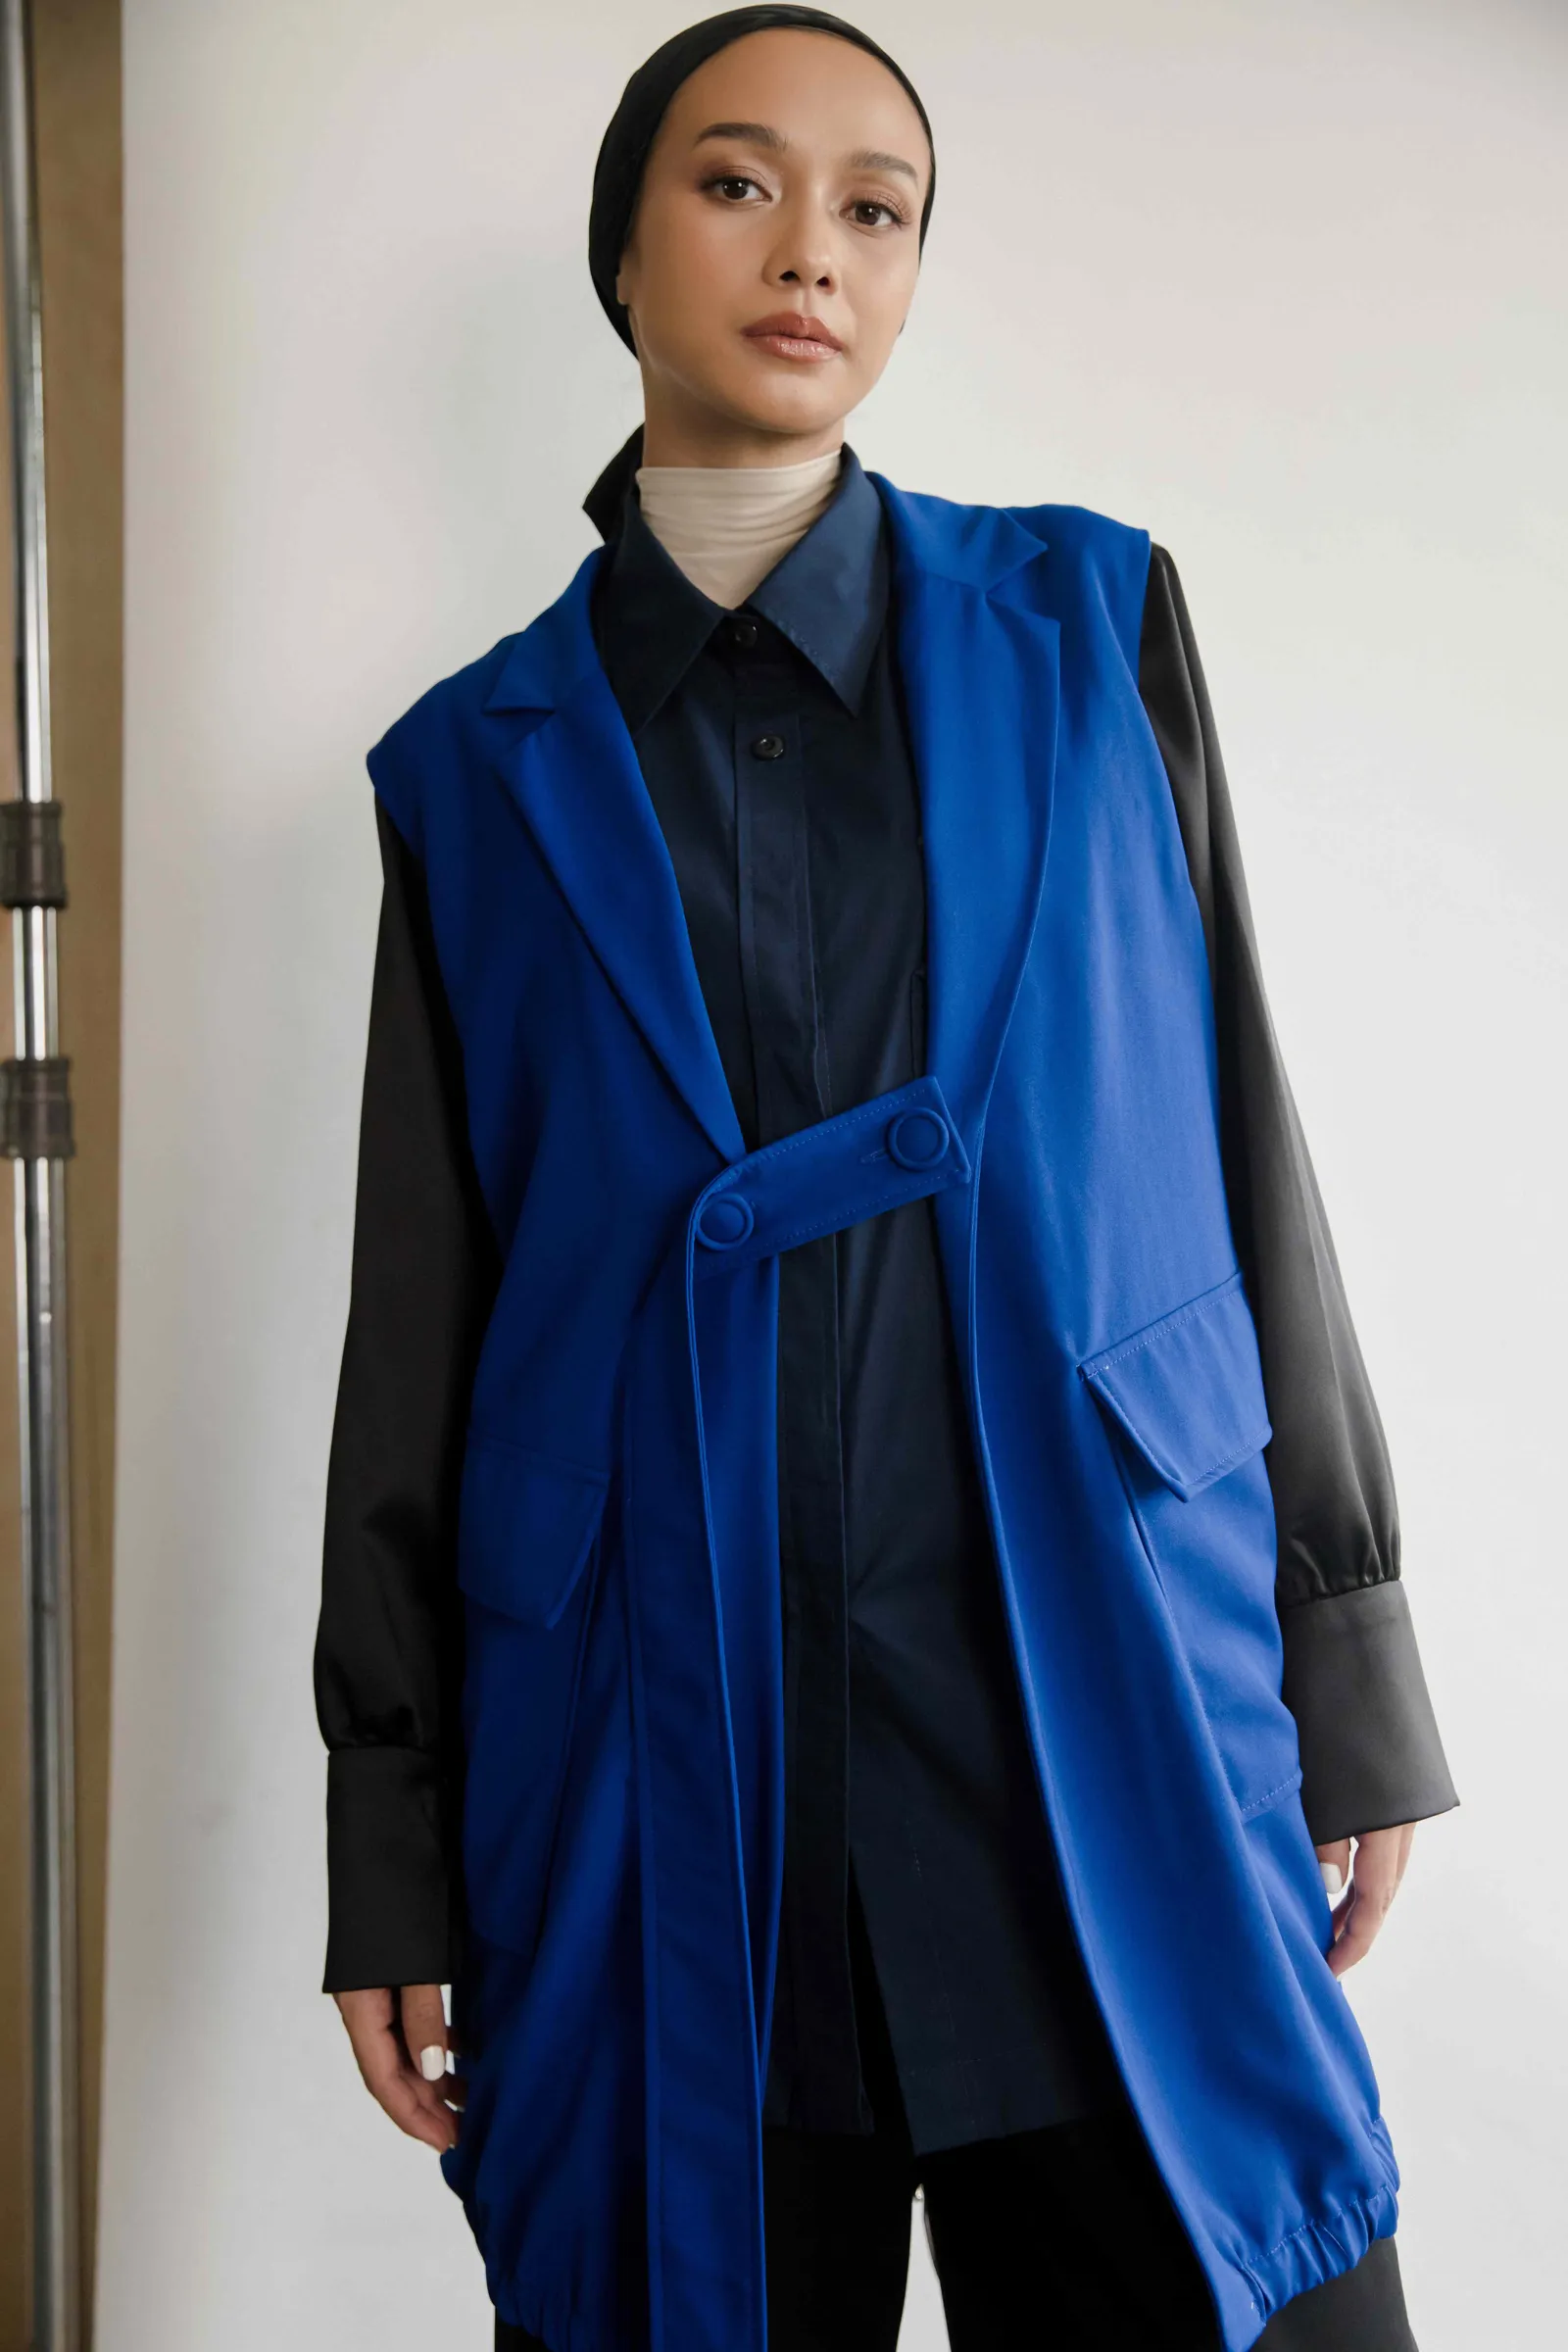 Perkenalkan ANQA, Modest Wear Terbaru yang Modern dan Versatile